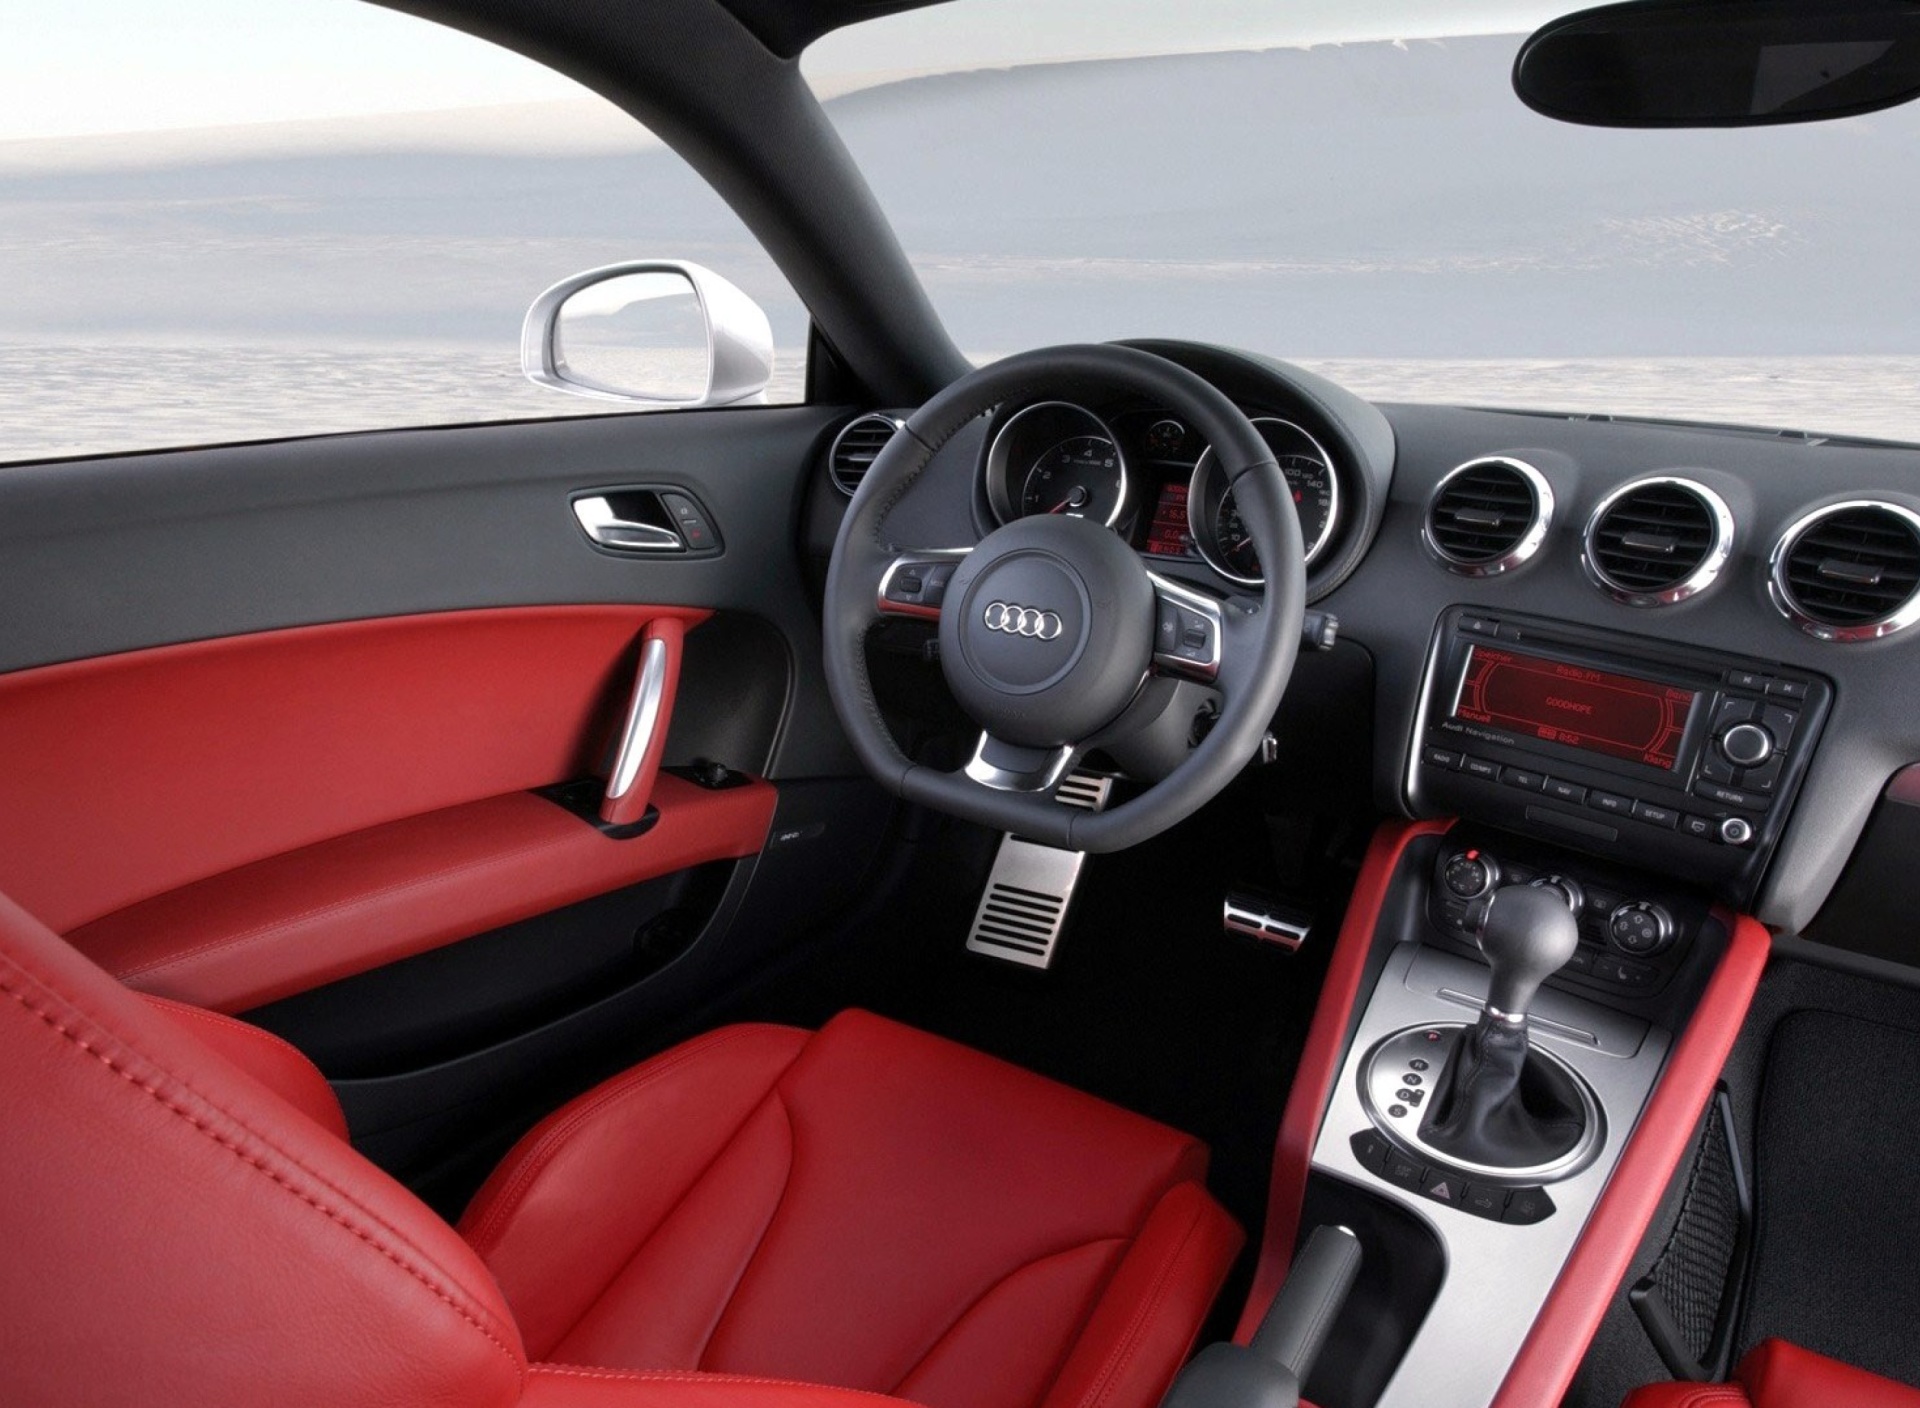 Audi TT 3 2 Quattro Interior screenshot #1 1920x1408